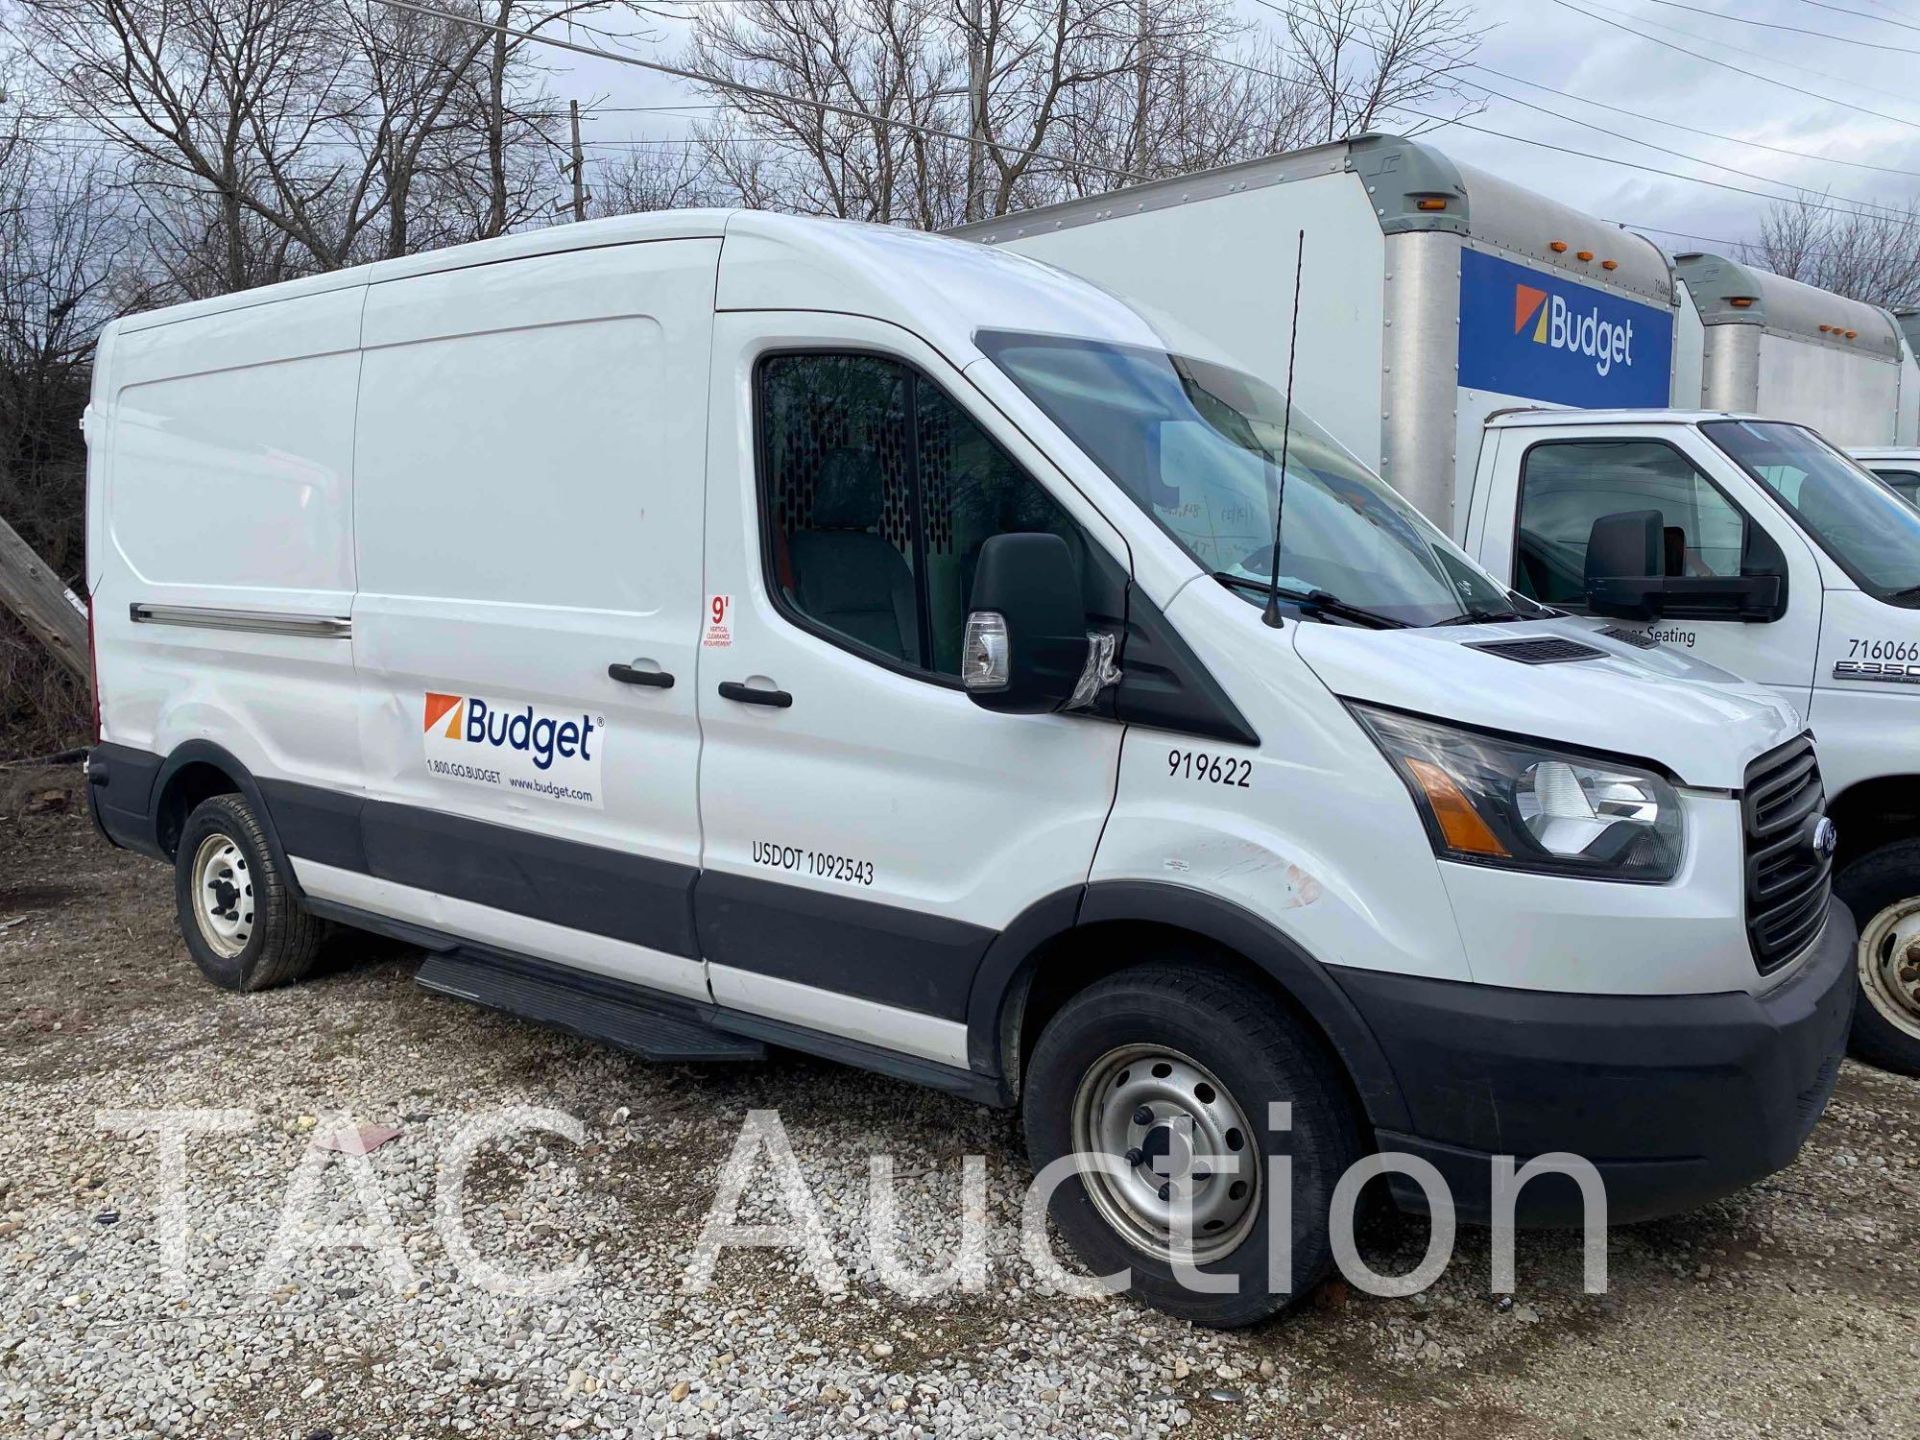 2019 Ford Transit 150 Cargo Van - Image 3 of 42